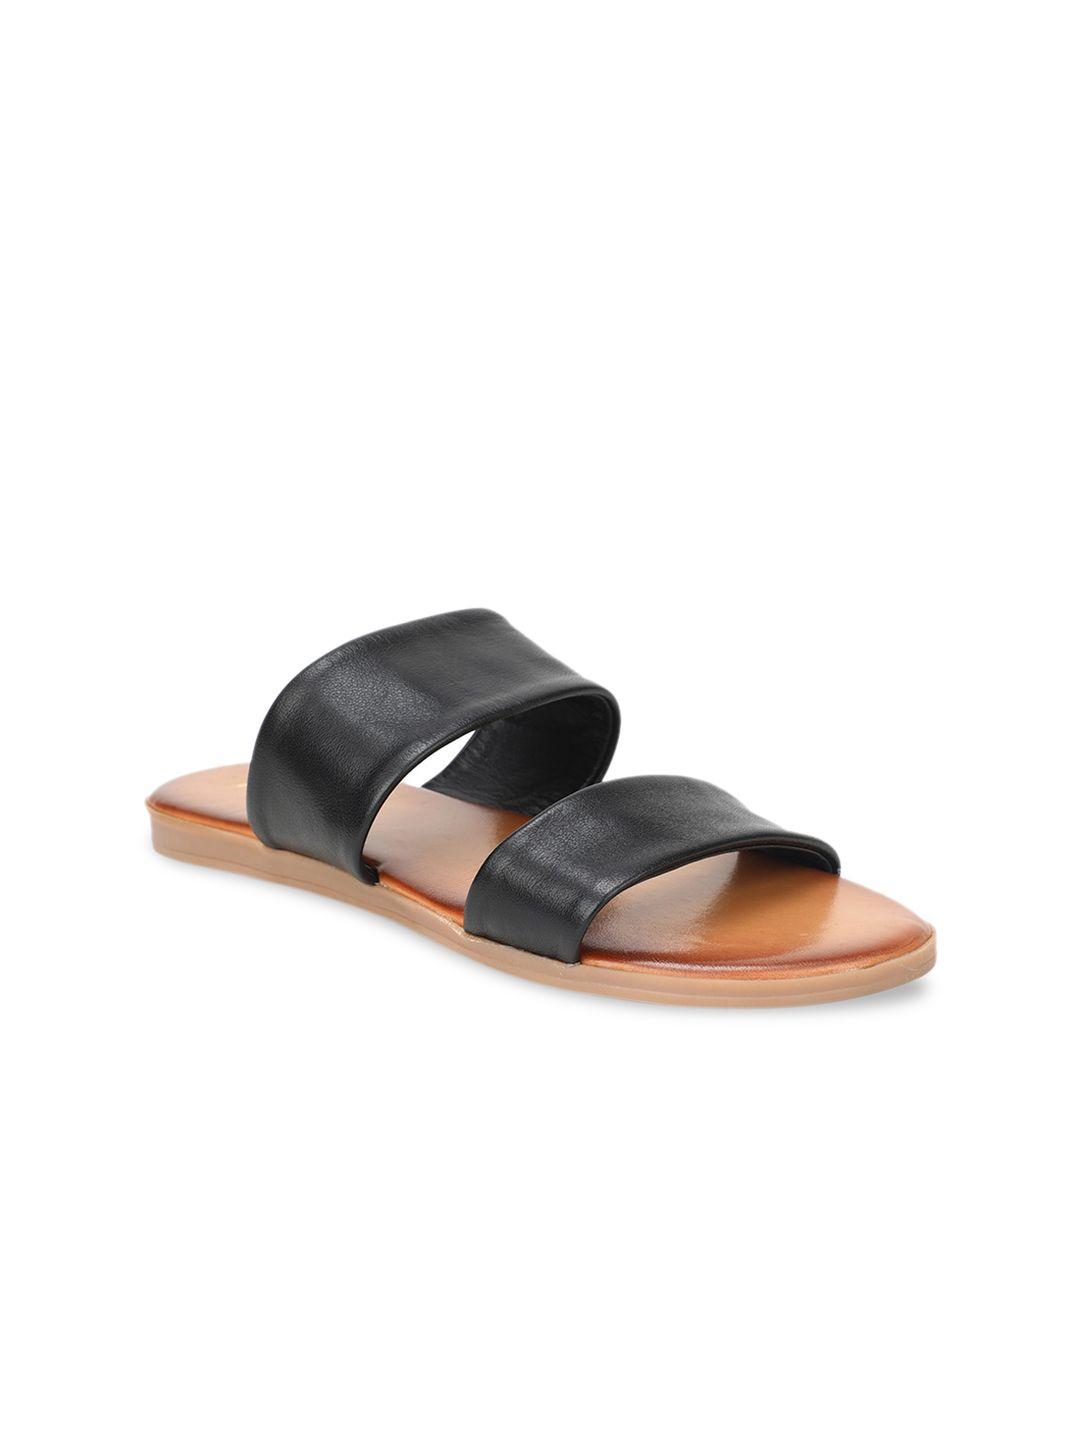 aldo-women-black-solid-leather-open-toe-flats